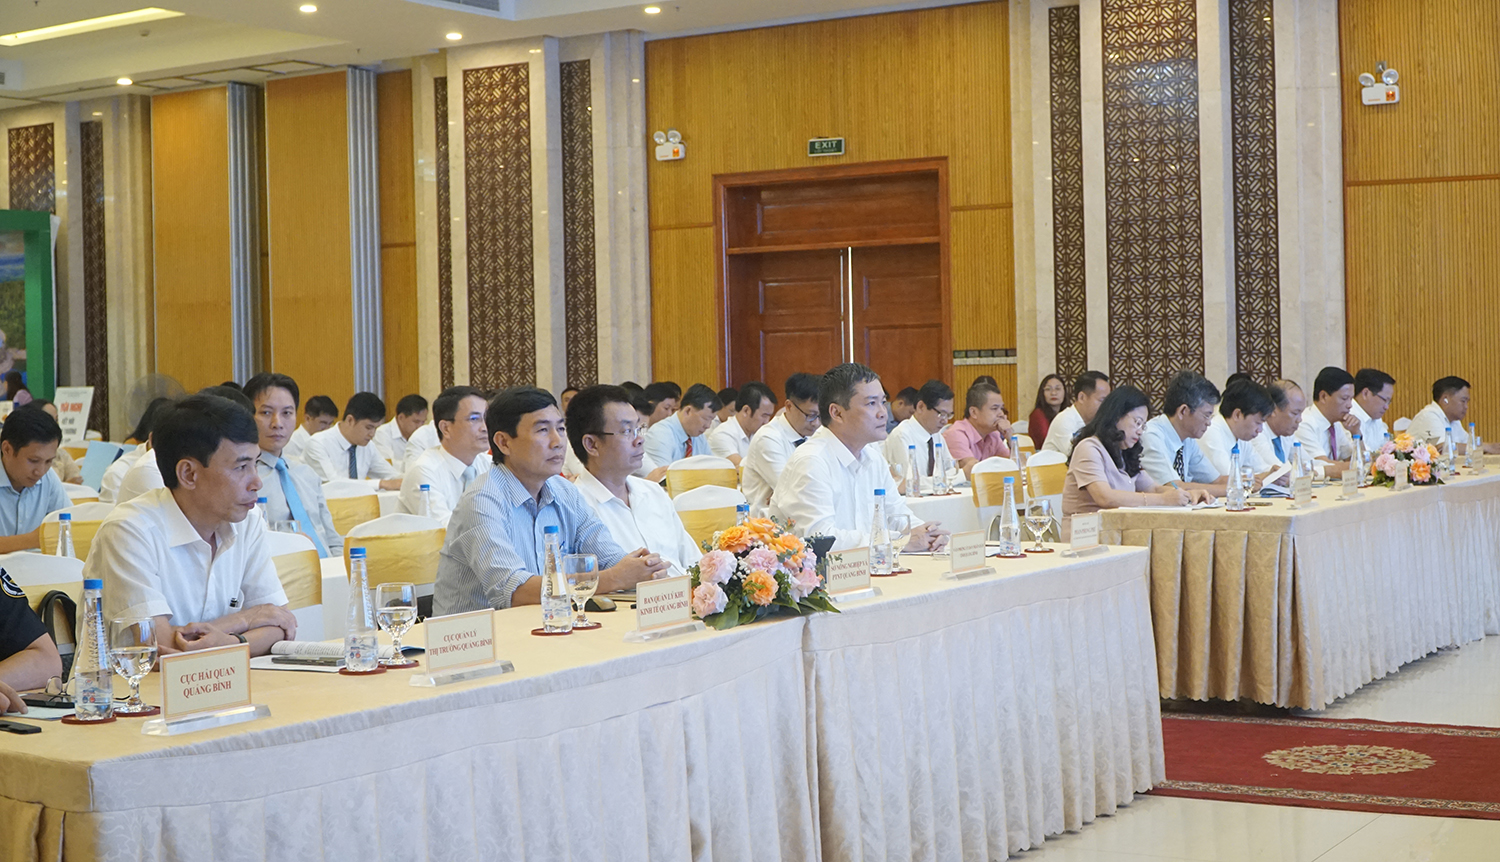 Hợp tác phát triển công nghiệp-thương mại giữa các tỉnh Bắc Trung bộ